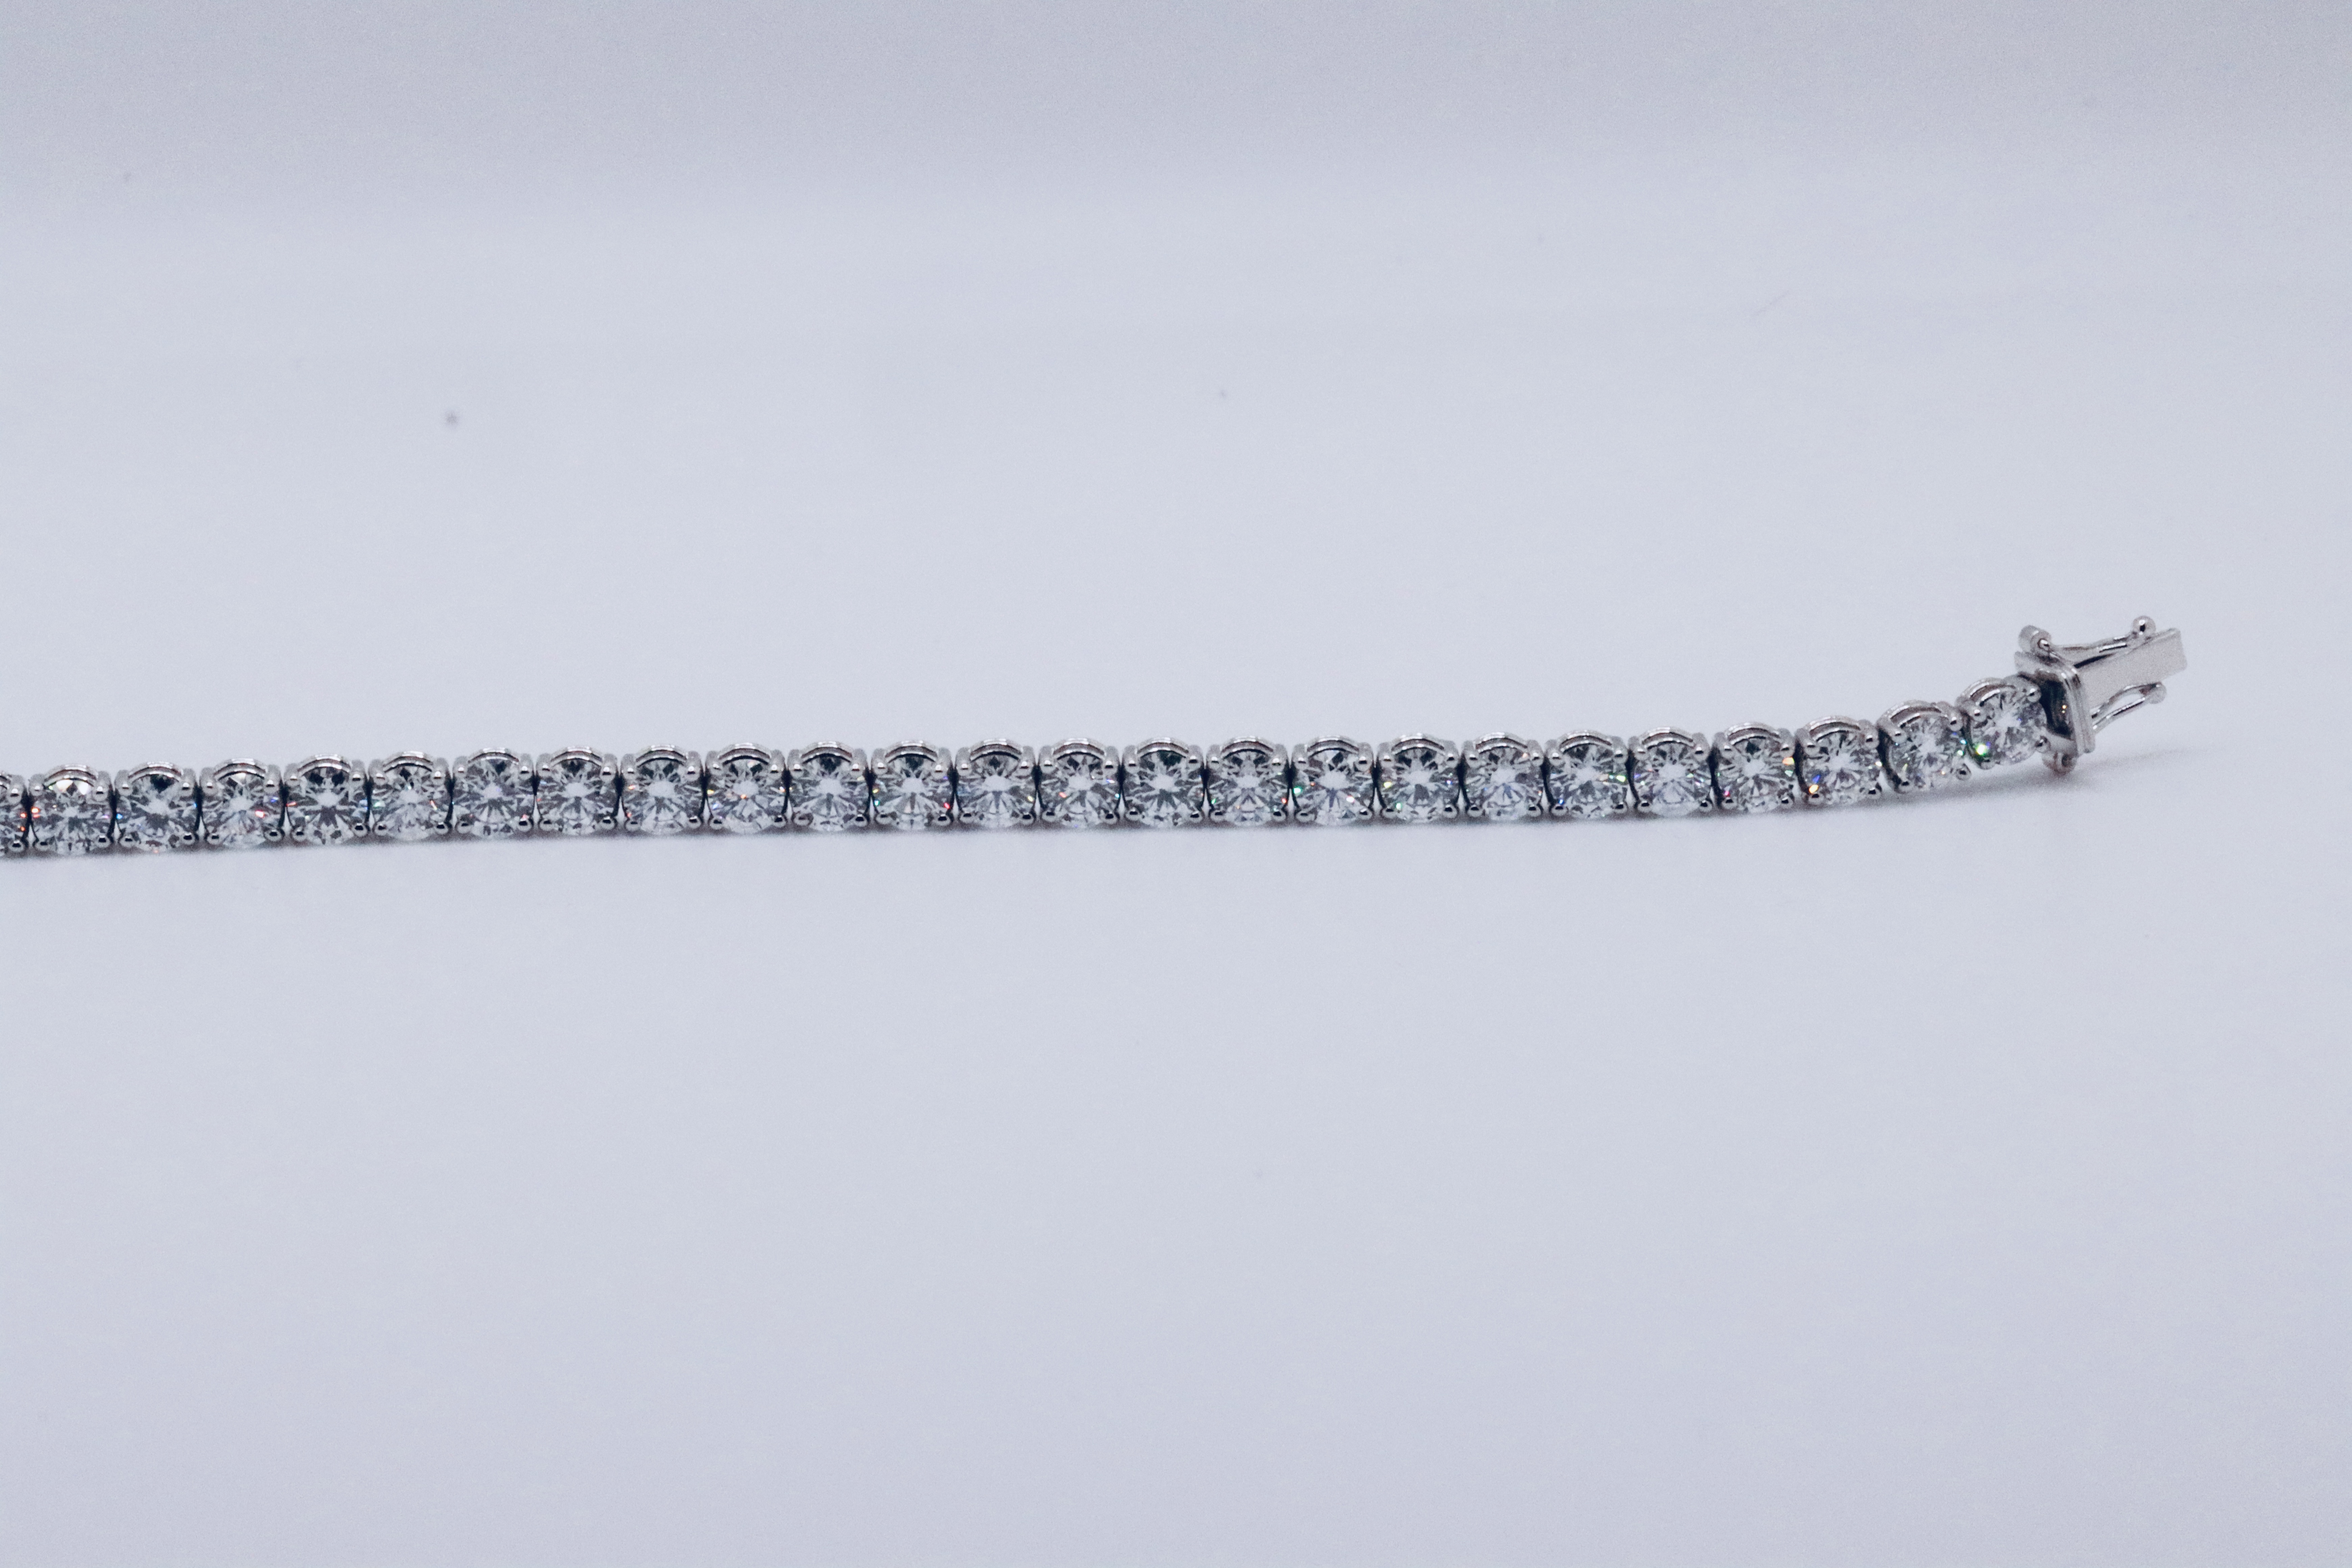 Round Brilliant Cut 14 Carat Diamond Tennis Bracelet D Colour VVS Clarity - 18Kt White Gold - IGI - Image 19 of 37